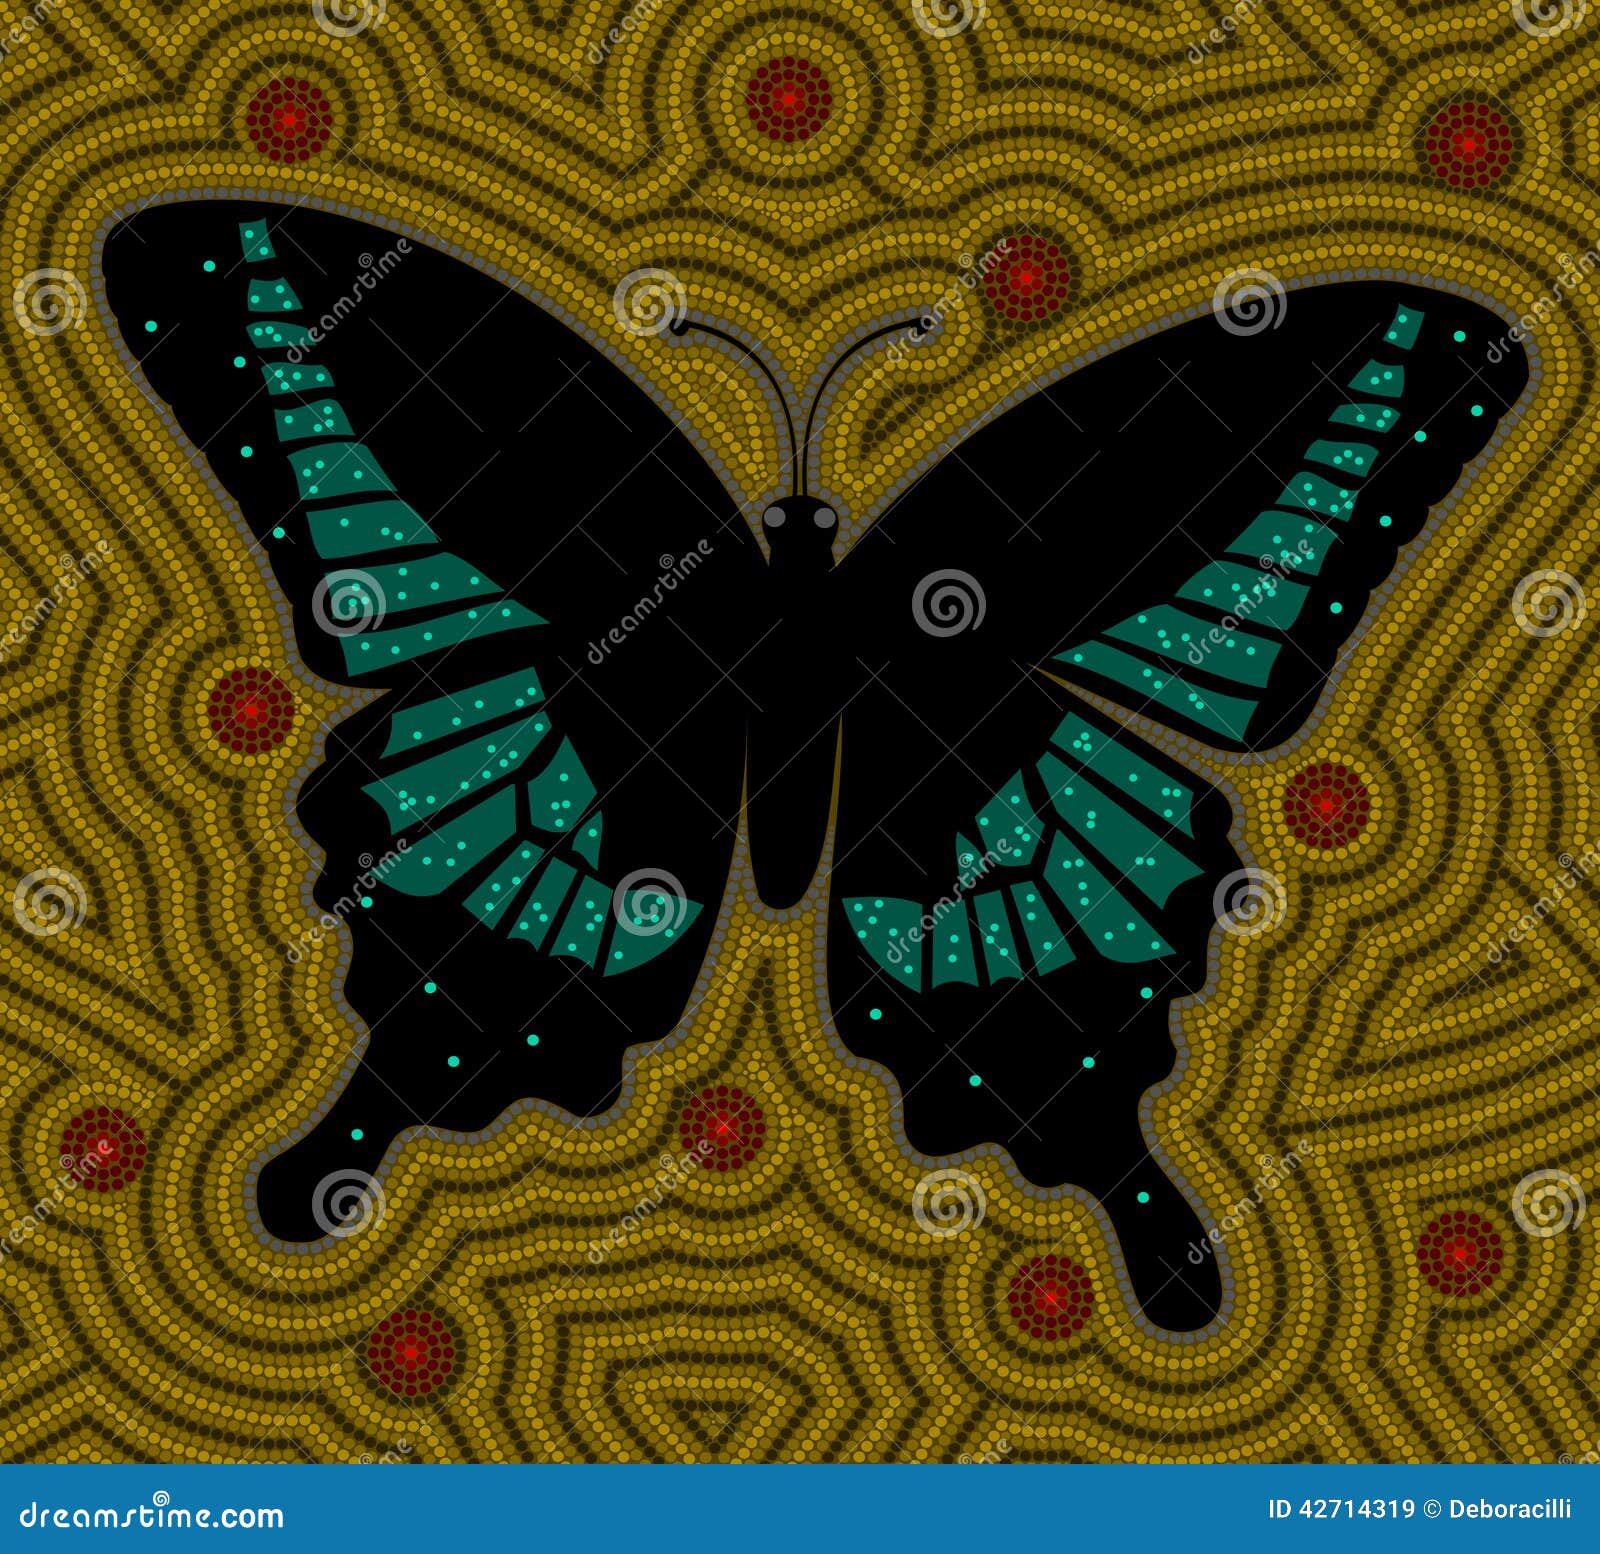 Πεταλούδα. Μια απεικόνιση βασισμένη στο αυτοώμον ύφος του σημείου που χρωματίζει απεικονίζοντας την πεταλούδα